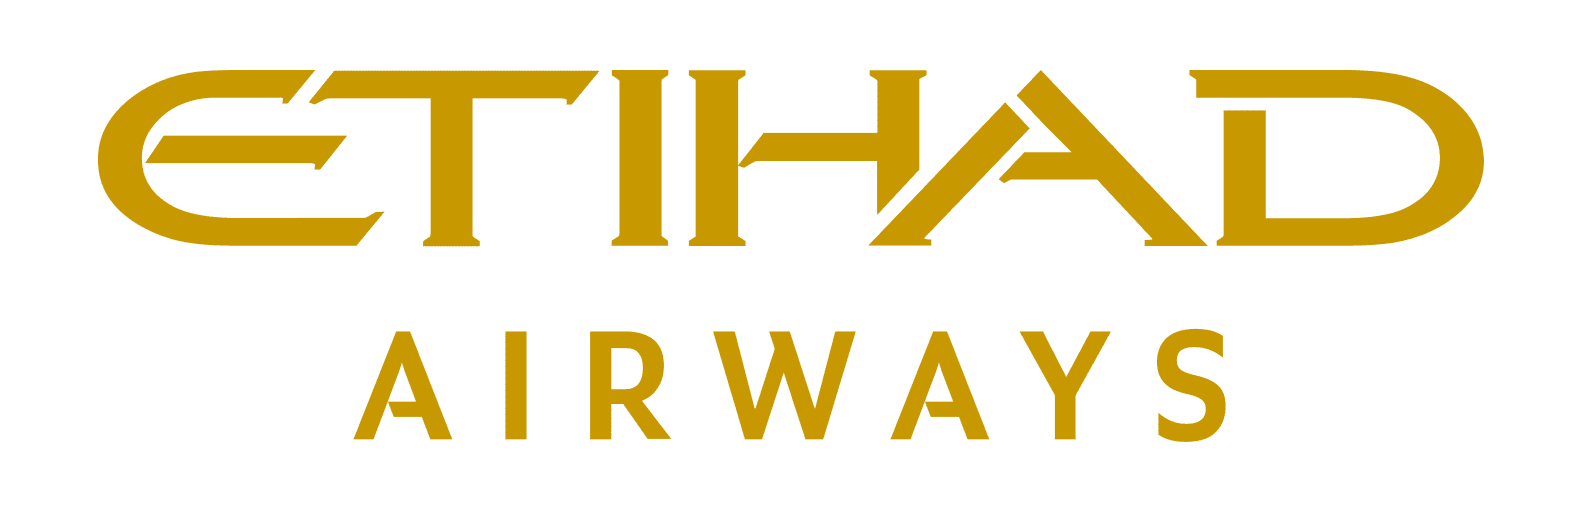 ethiwad airways